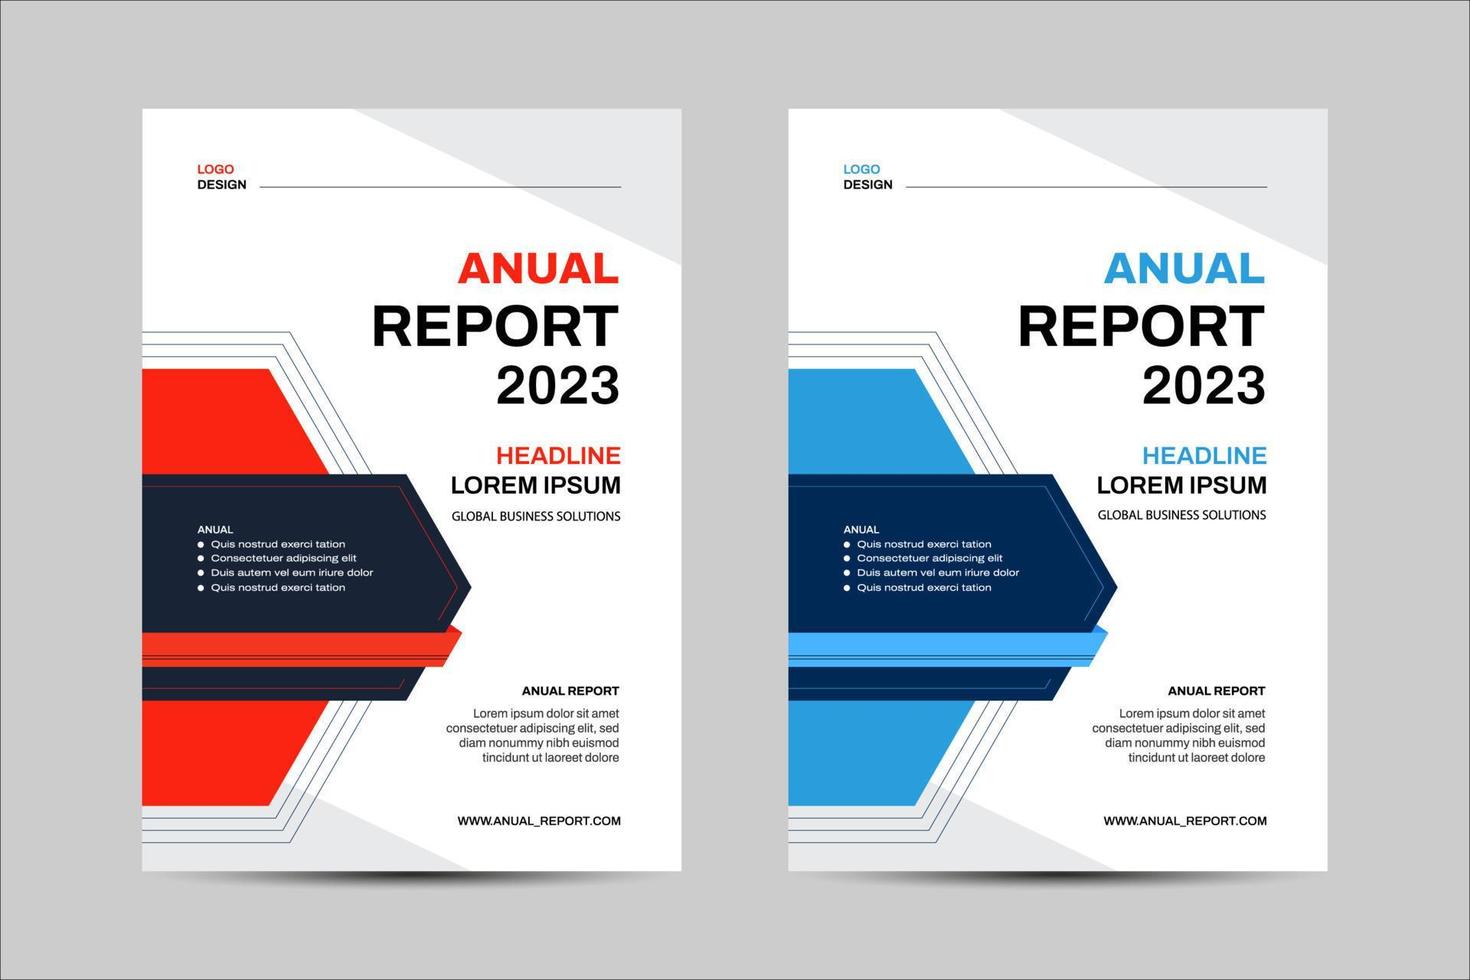 mall vektor design för broschyr, årlig rapport, tidskrift, affisch, företags- presentation, portfölj, flygblad, infografik,